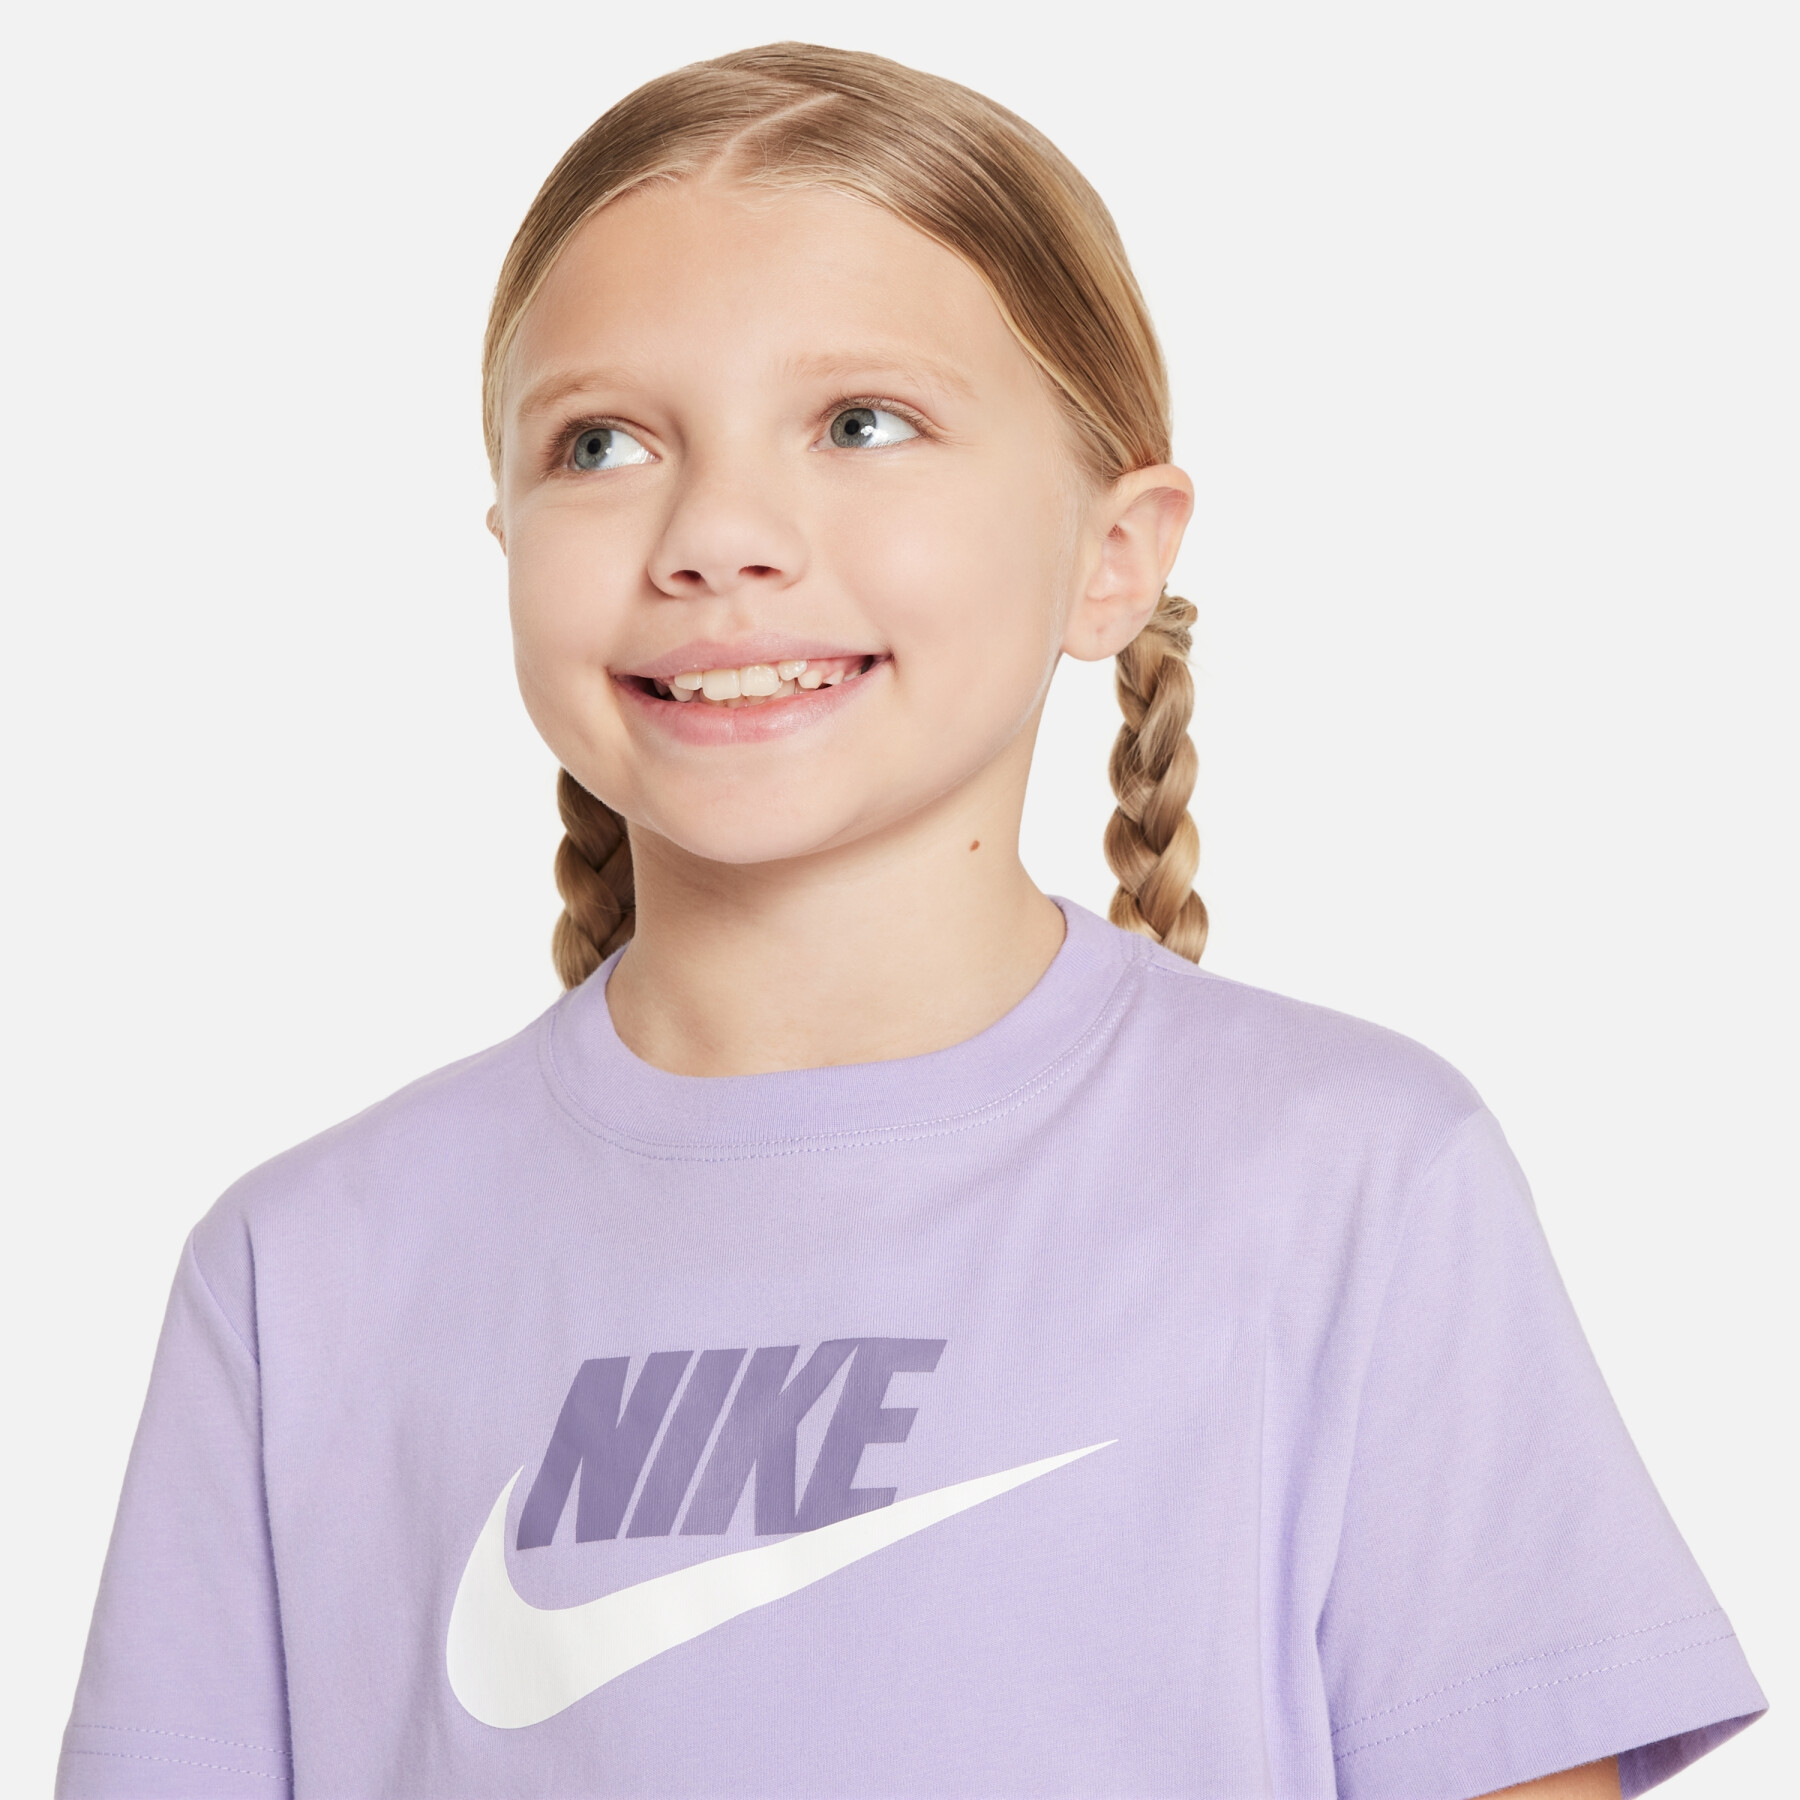 T-Shirt Nike